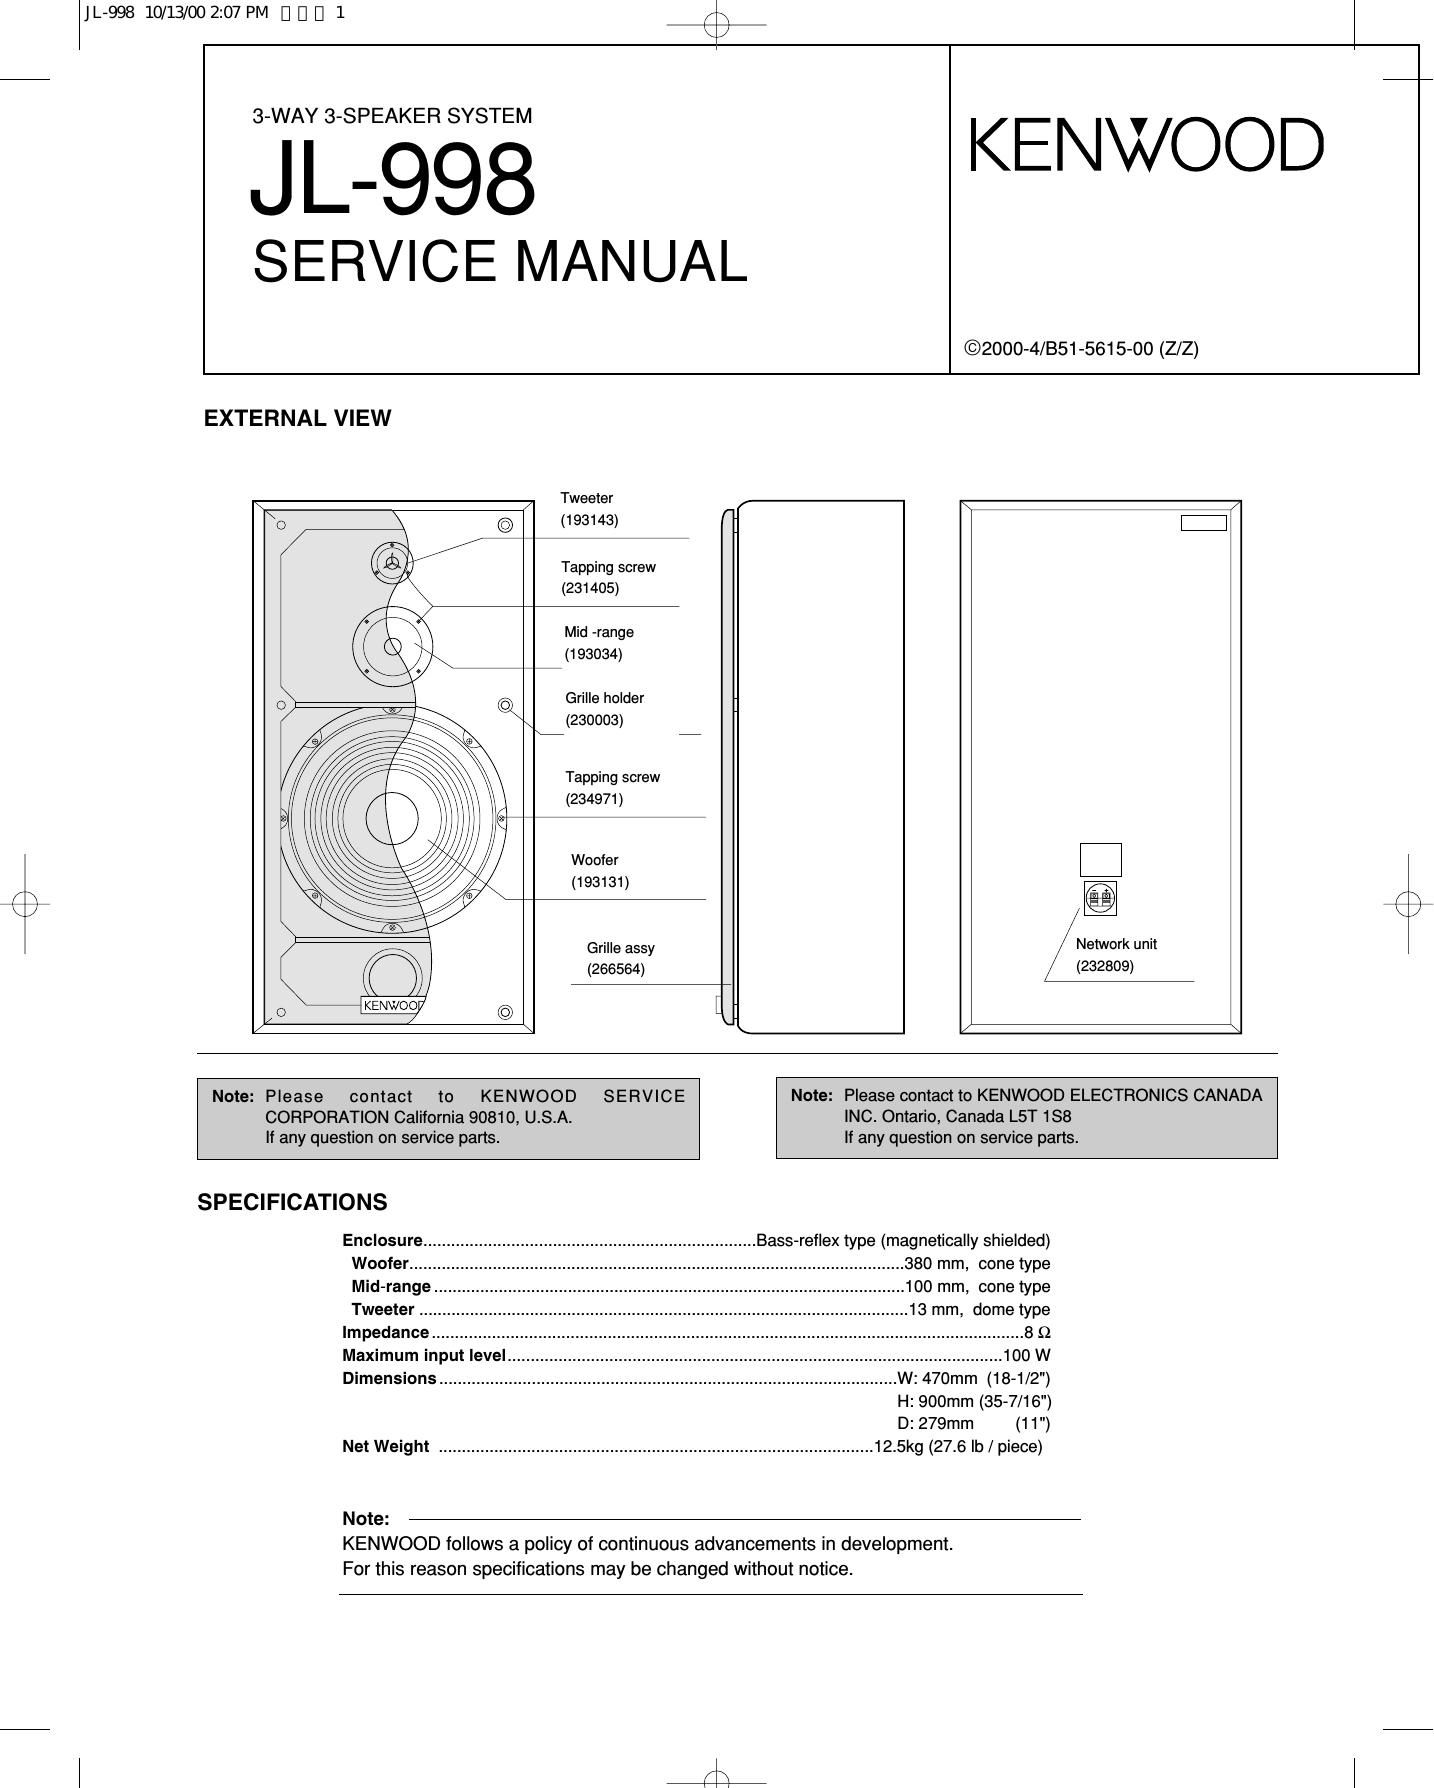 Kenwood JL 998 Service Manual